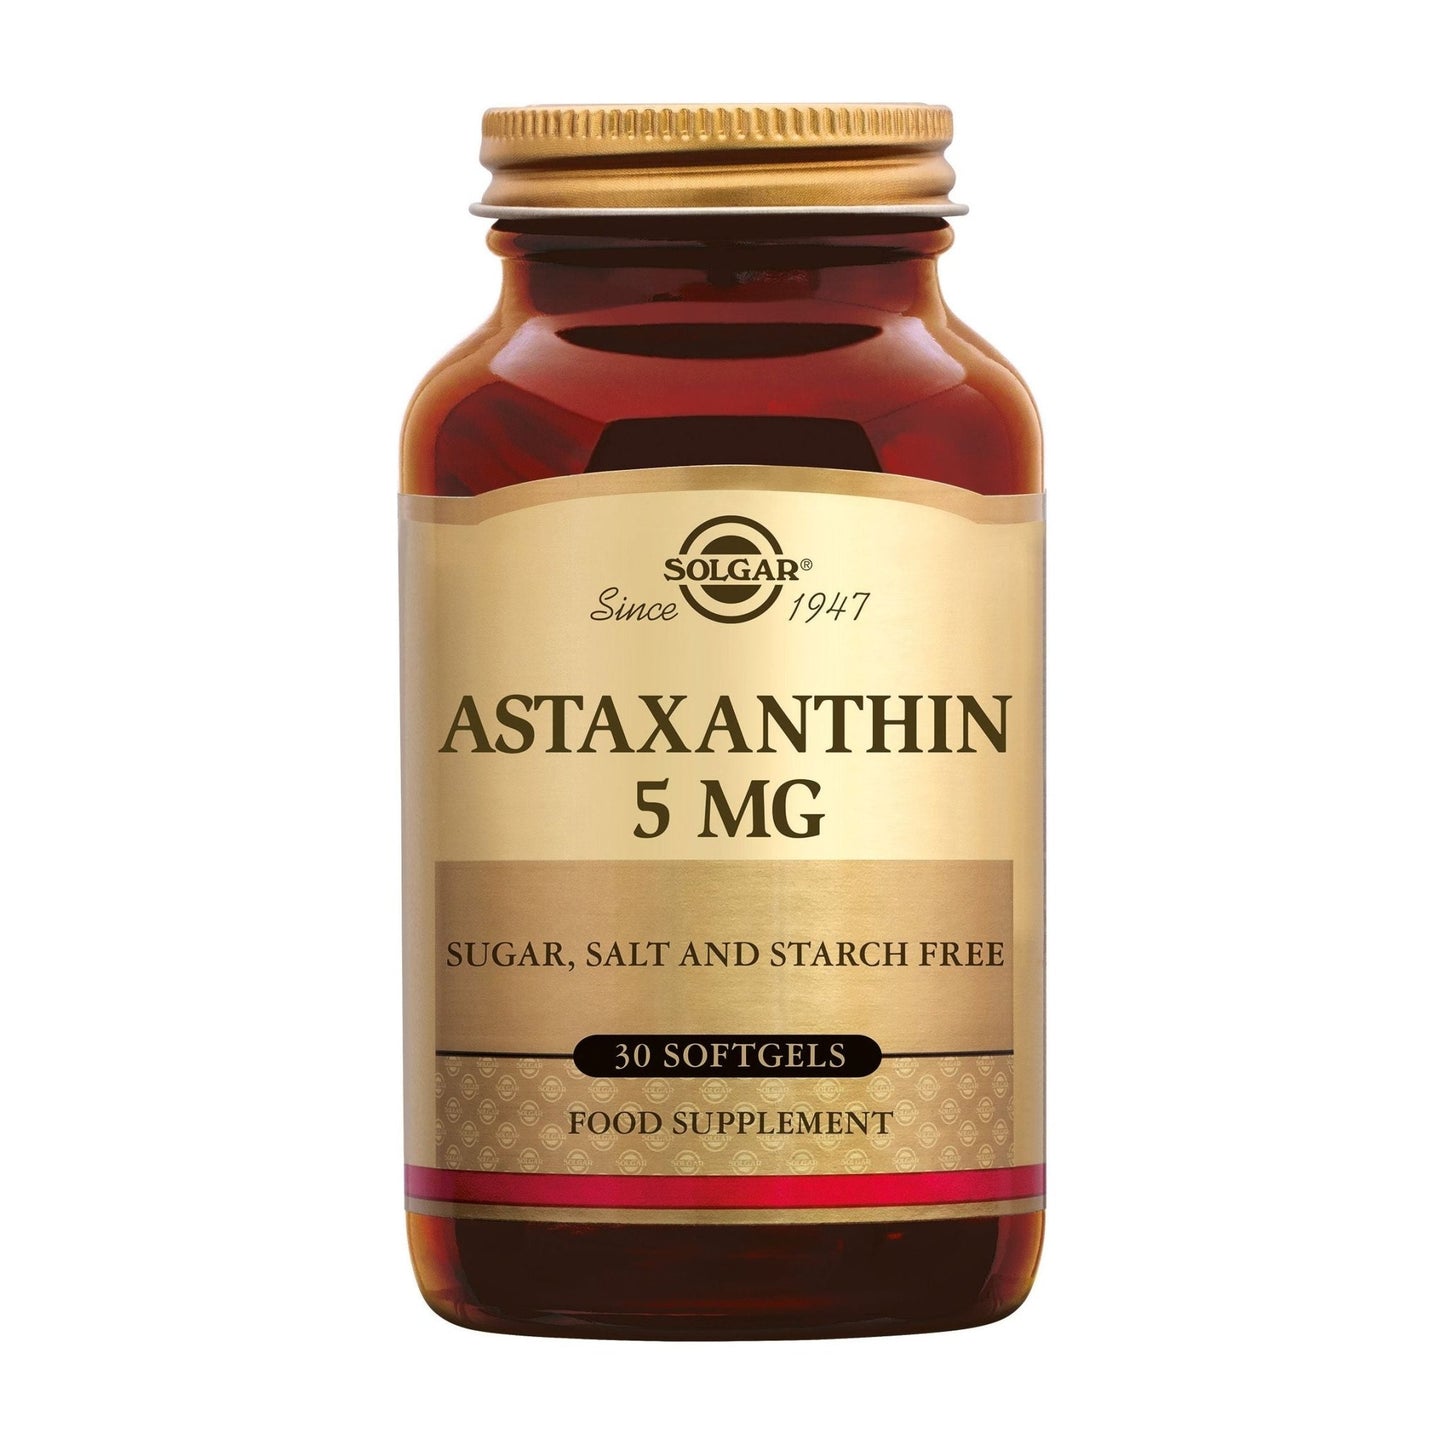 Astaxanthine 5 mg Supplement Solgar   